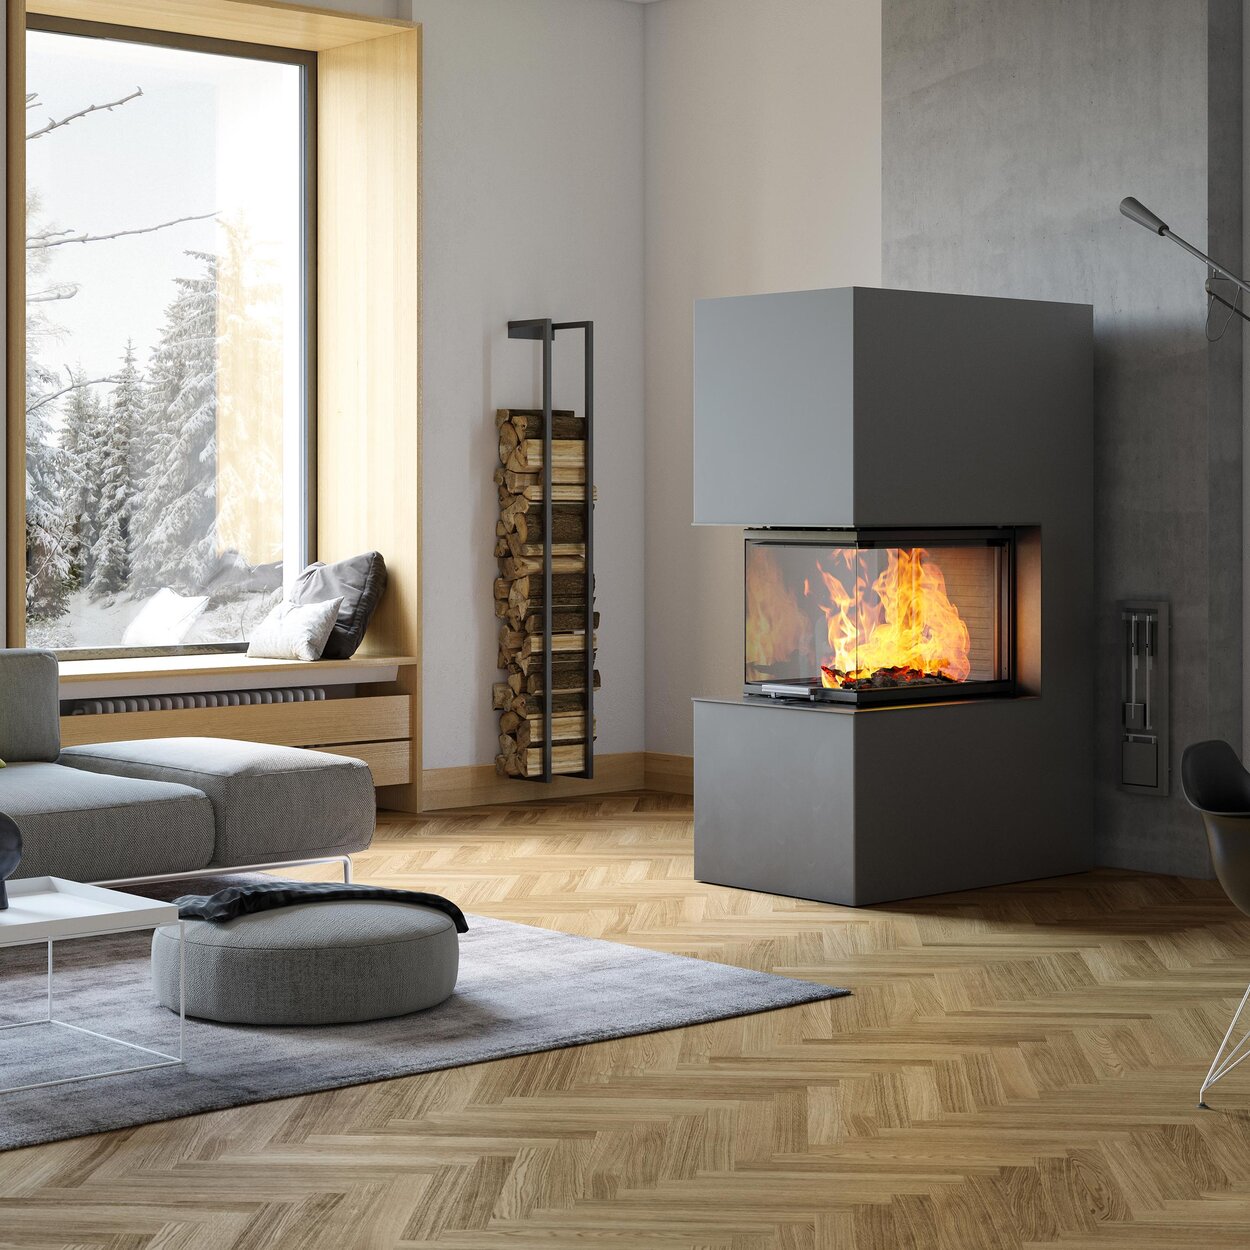 Holz-Kamin VISIO 3:1 ST teilt als freistehender, fertig eingebauter Kamin Räume intelligent auf und präsentiert das Flammenbild auf alle Seiten